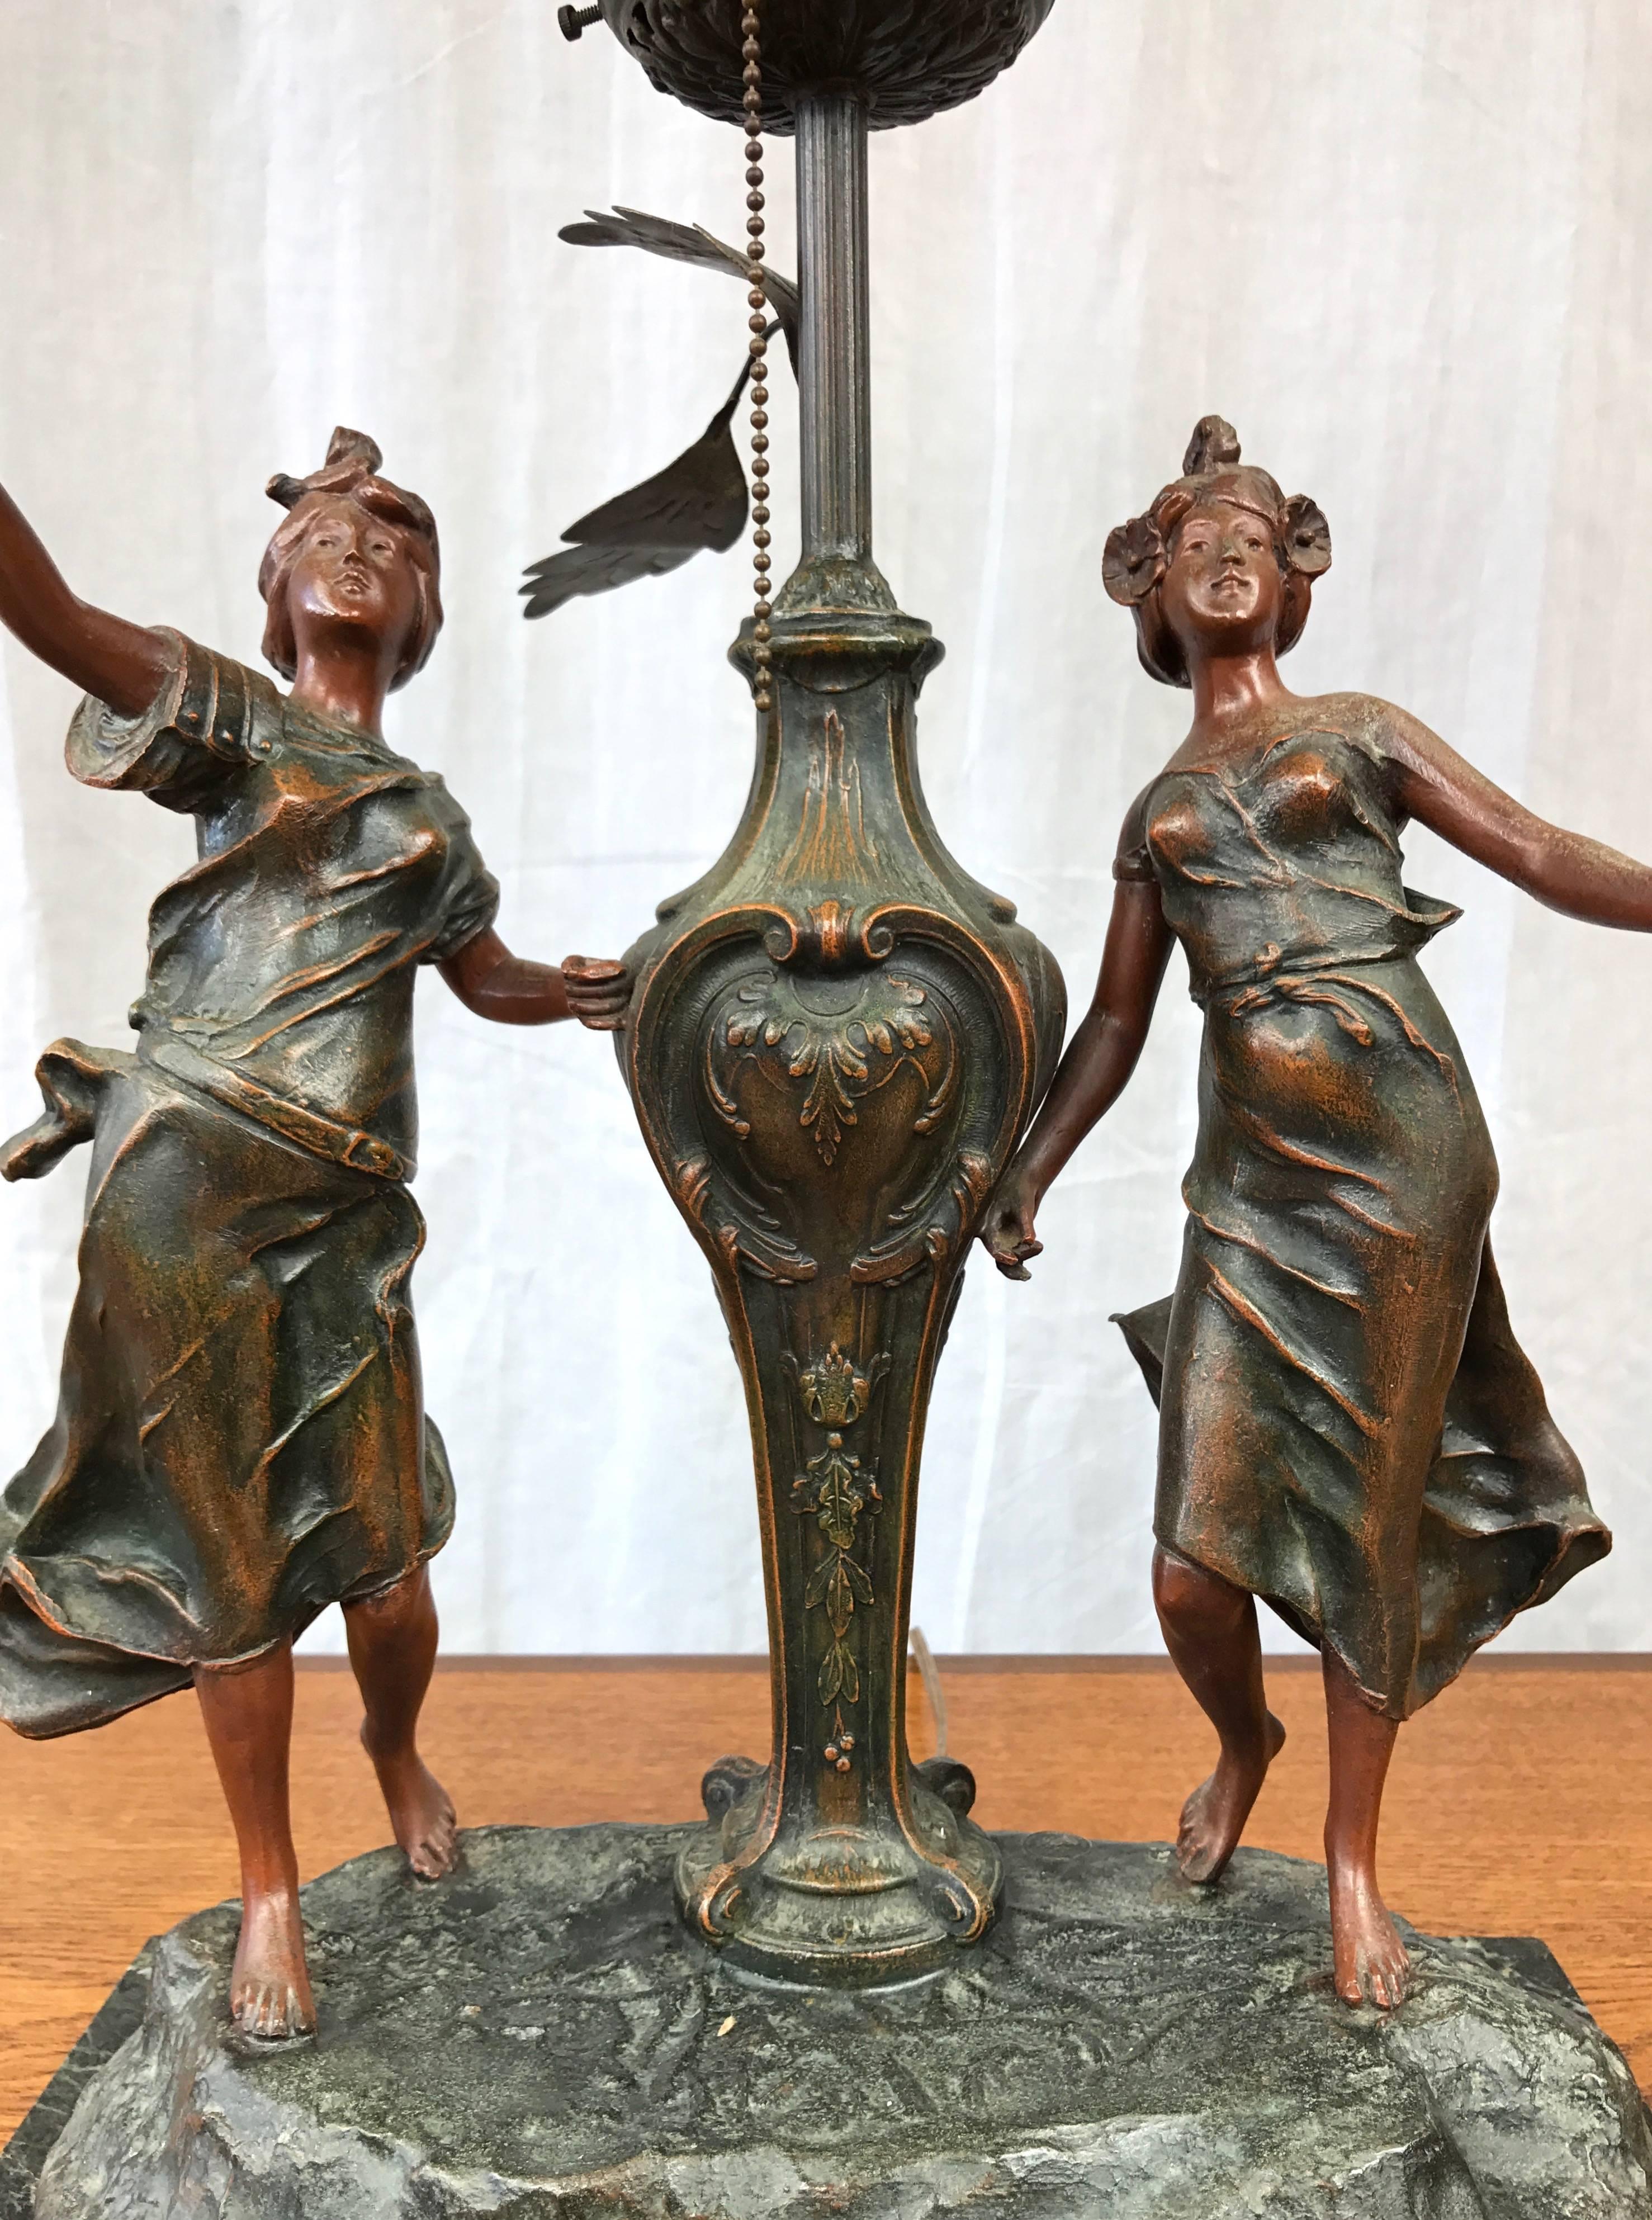 Eine seltene signierte französische figurale Jugendstil-Tischlampe aus Gusseisen mit Glasschirm und Marmorbühne, in der Art von L & F Moreau, Julien Caussée oder Ernest Rancoulet hergestellt.

Die ausdrucksstarken und überschwänglichen weiblichen